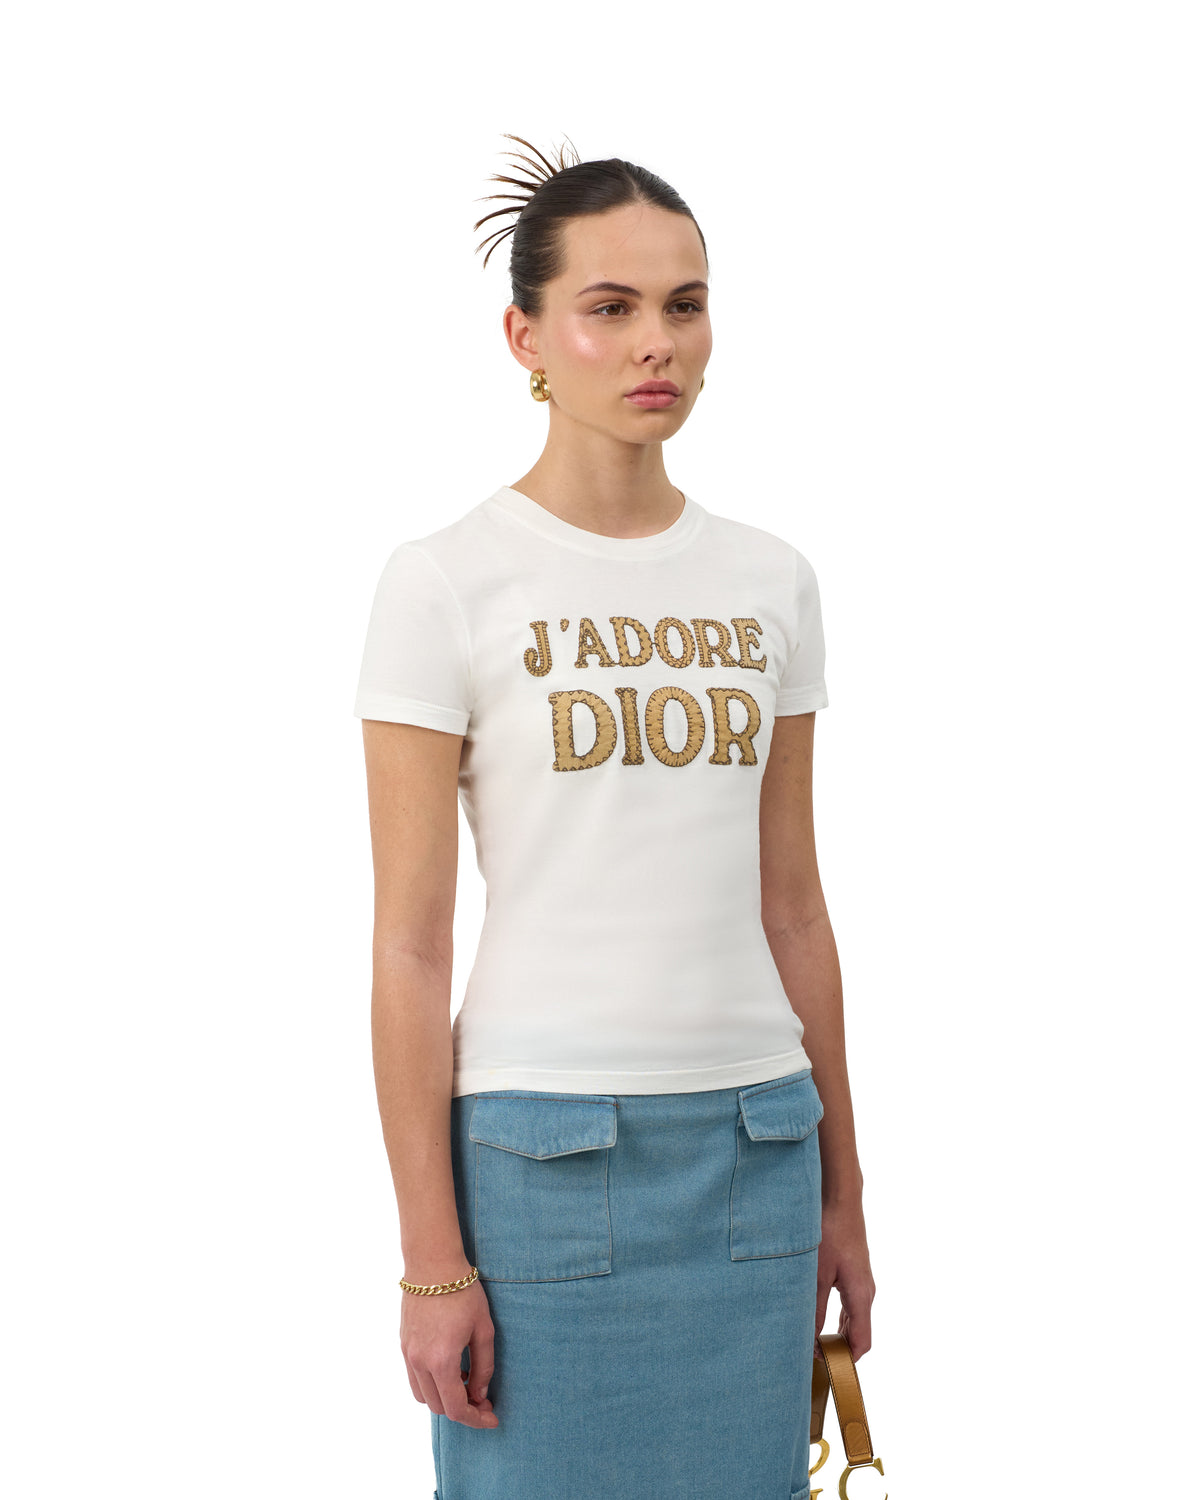 Pre-Owned Christian Dior J‘adore Dior T-Shirt